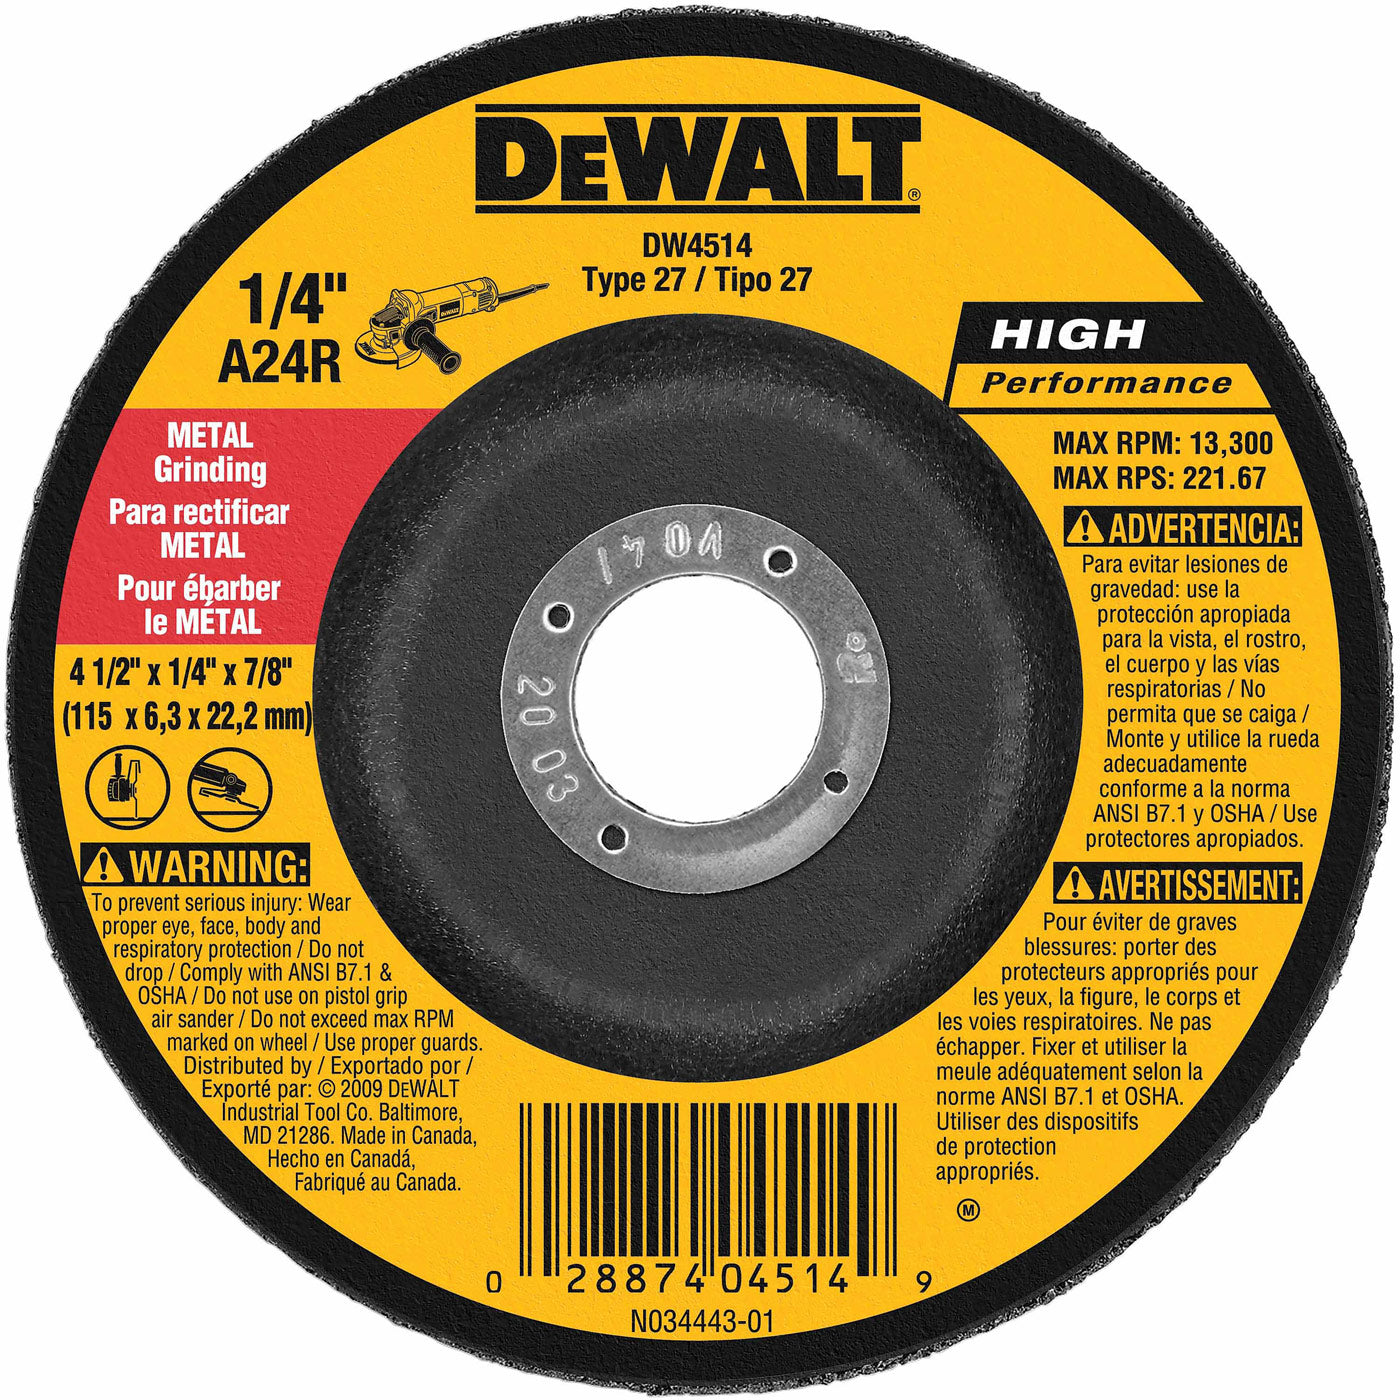 DeWalt DW4514 4-1/2" x 1/4" x 7/8"  General Purpose Metal Grinding Wheel